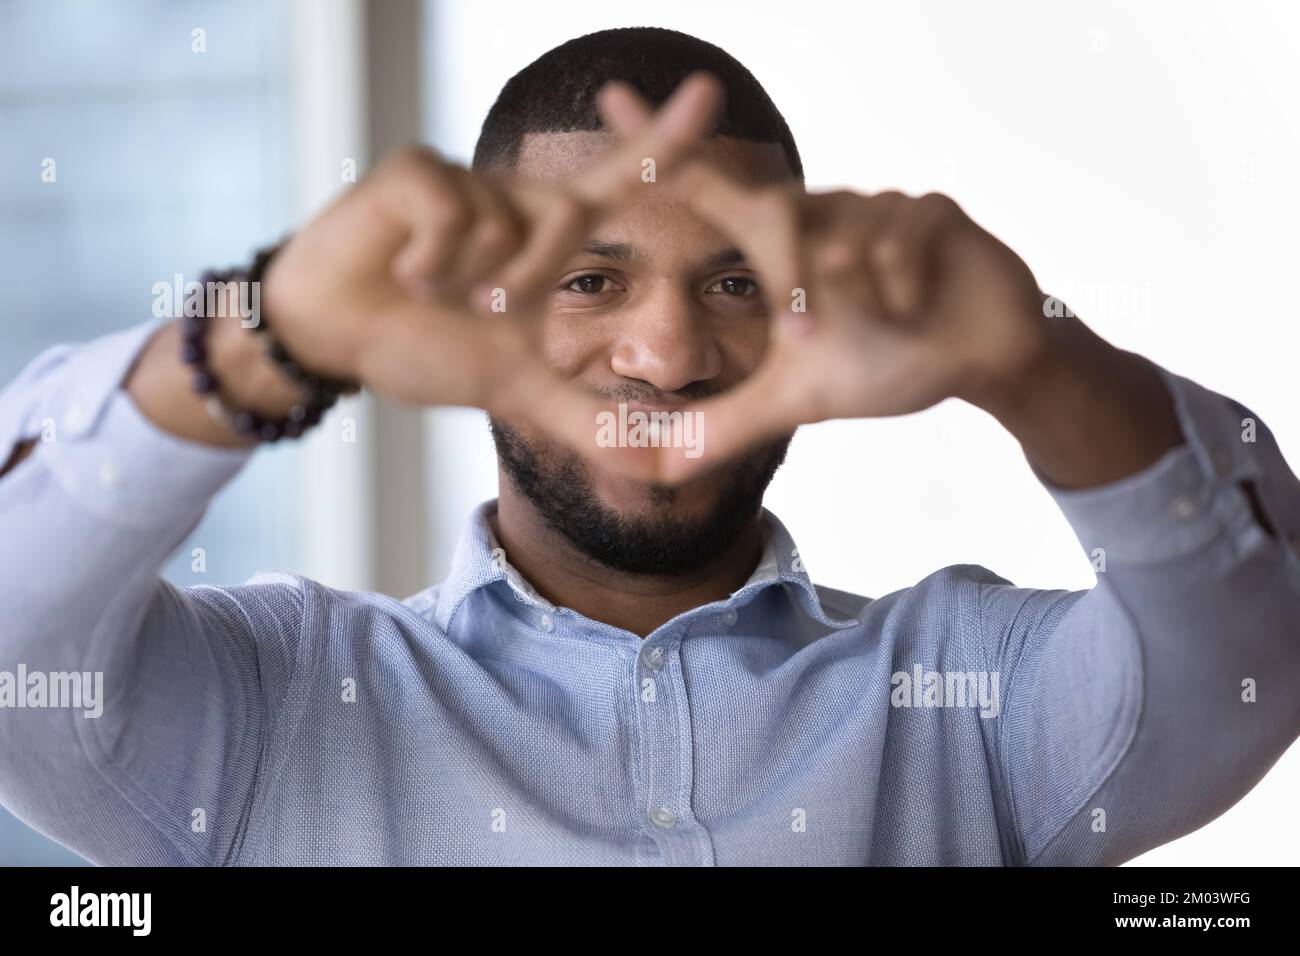 Ein glücklicher junger Afrikaner, der durch einen Finger-Fotografierahmen schaut Stockfoto